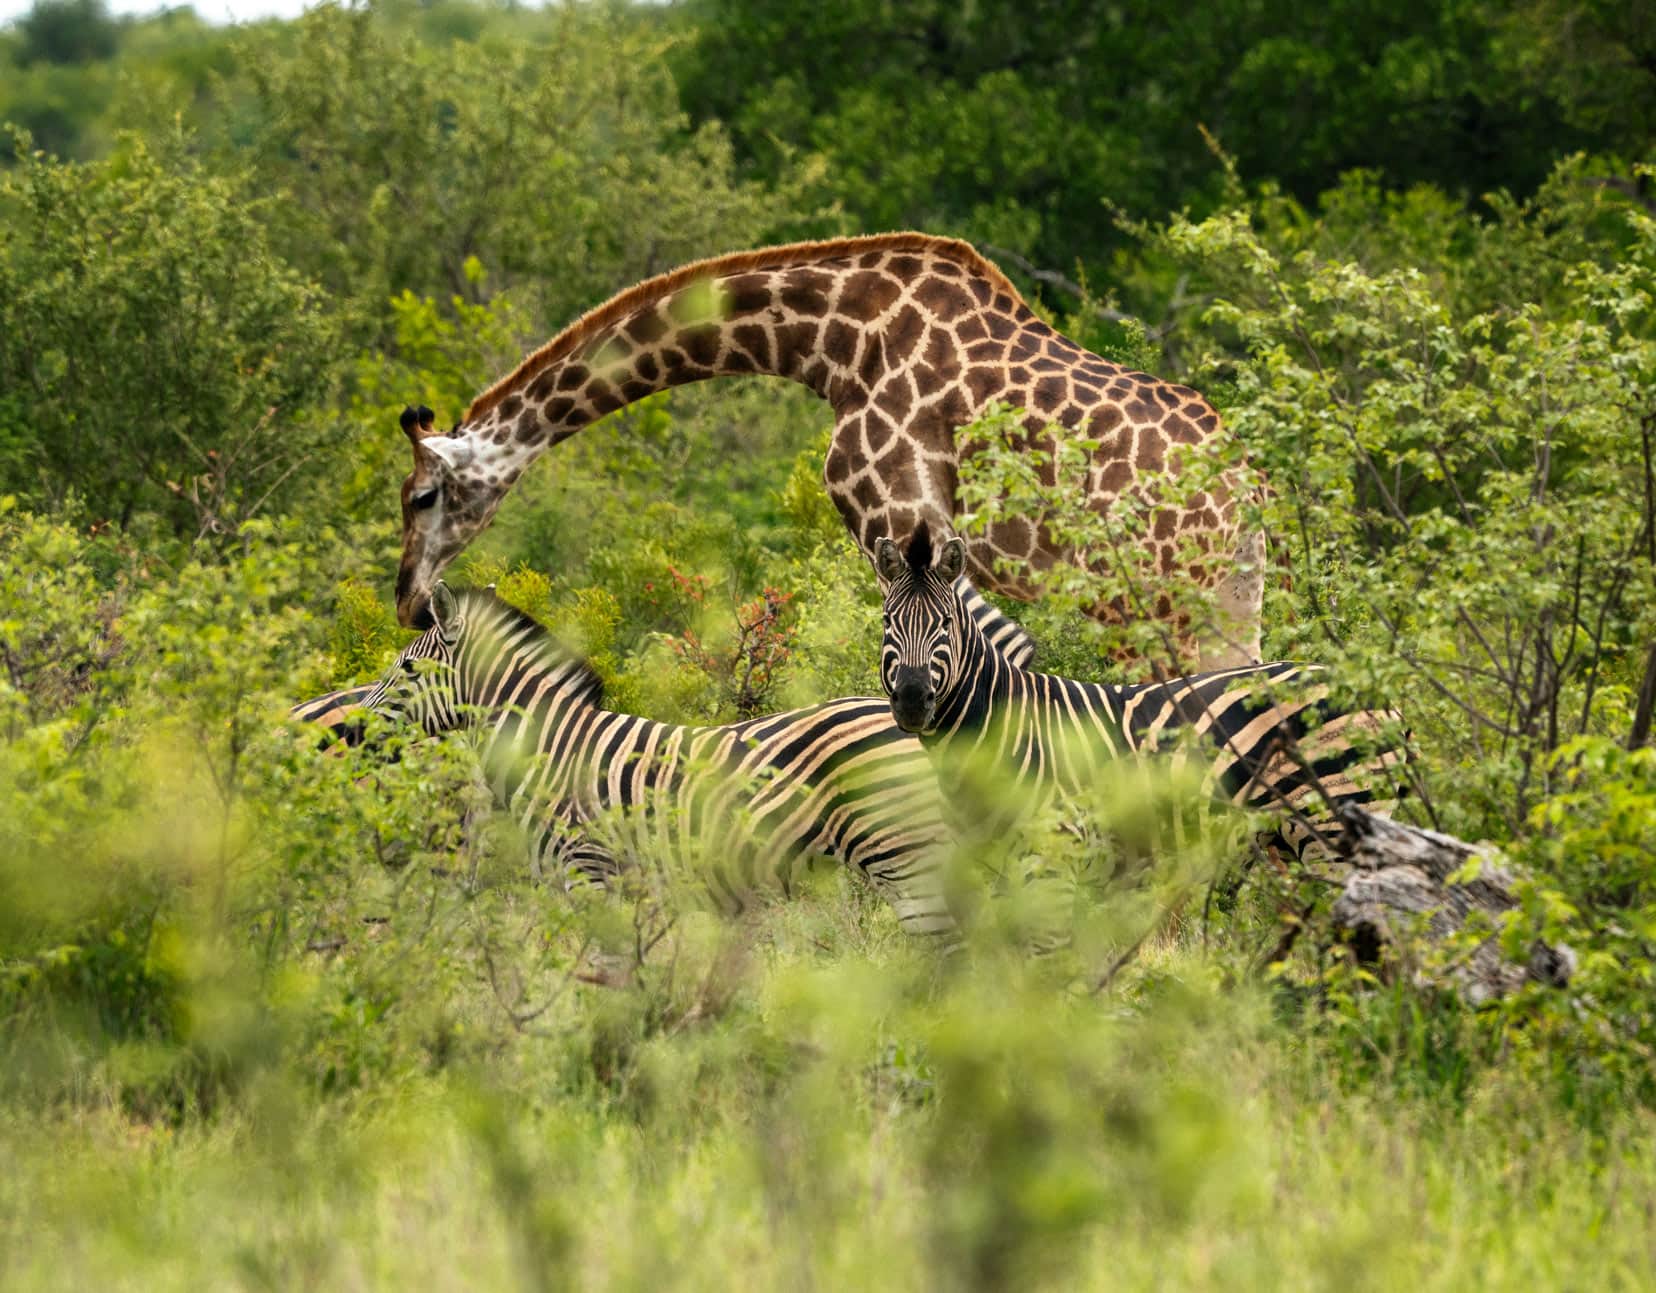 Giraffe and zebra with giraffe bending over towards the zebras